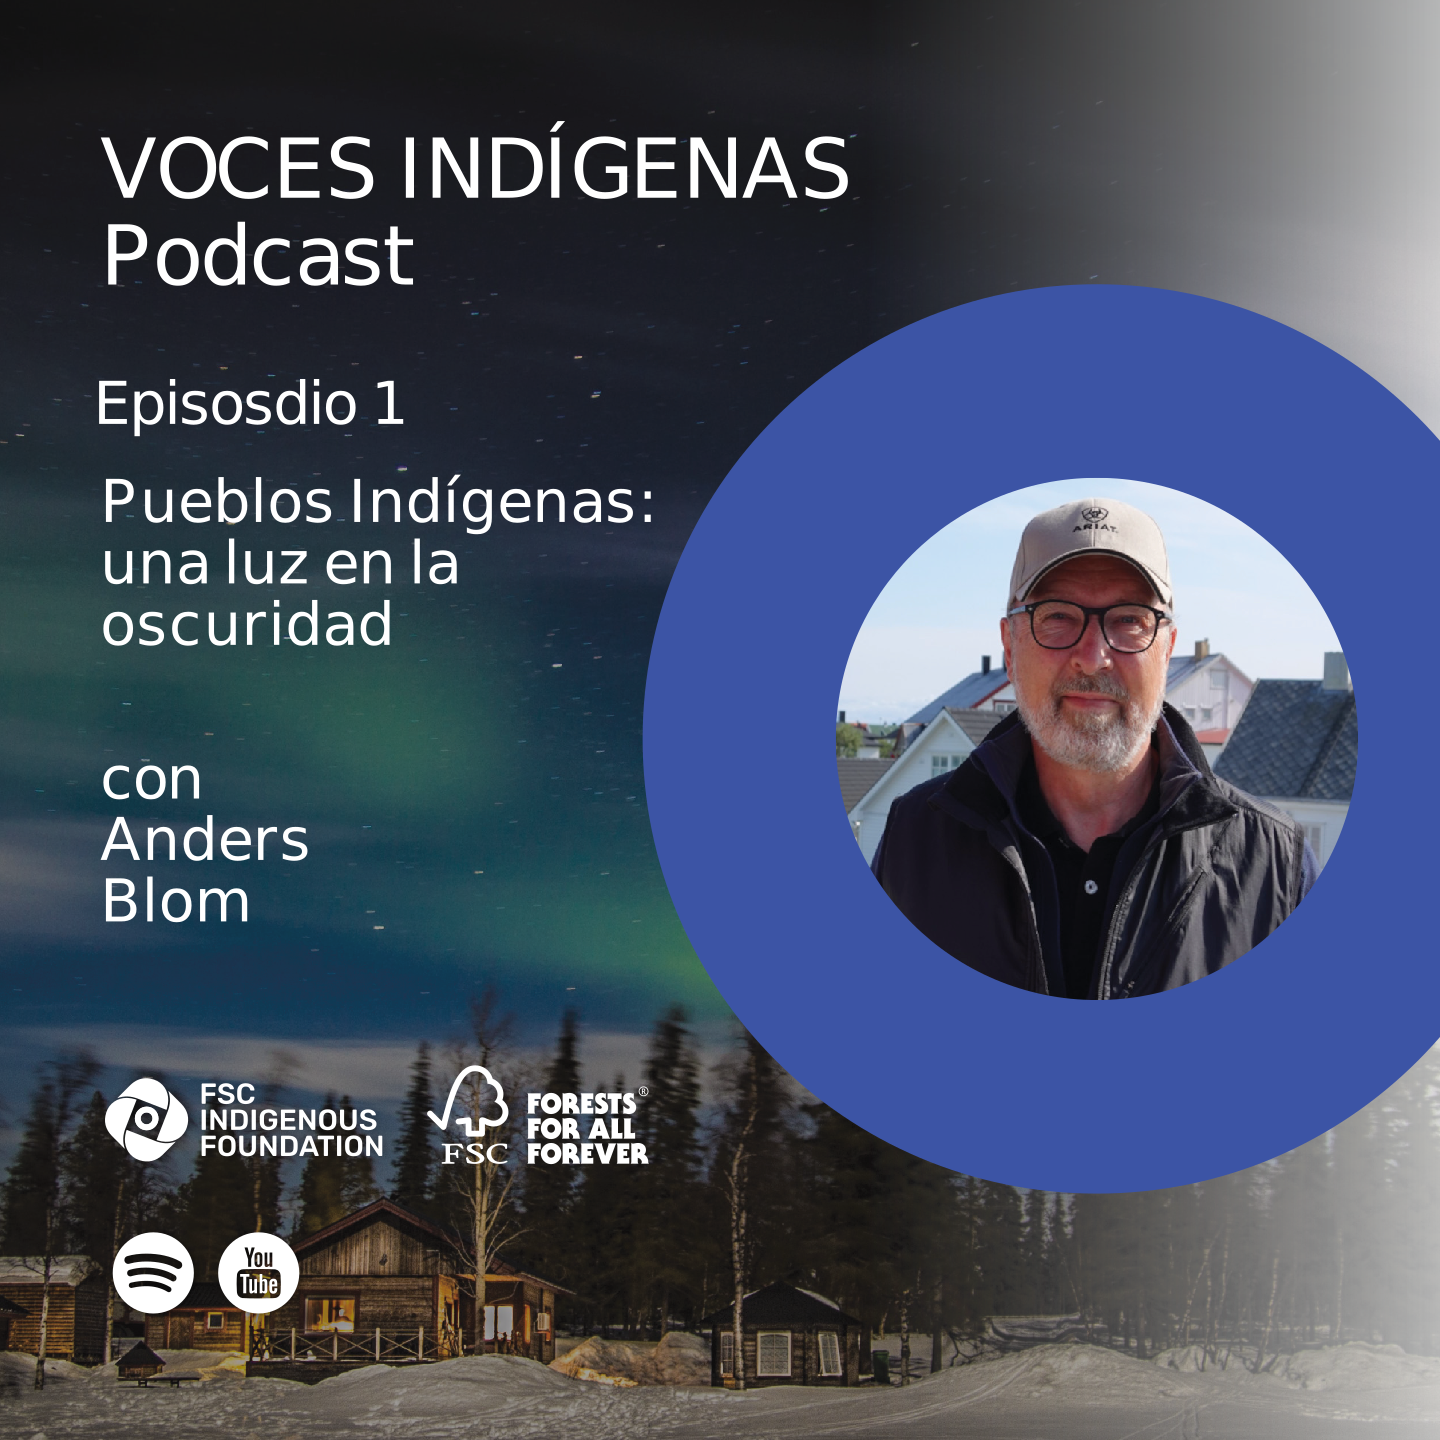 arte promocional podcast voces indígenas episodio 1 Anders Blom